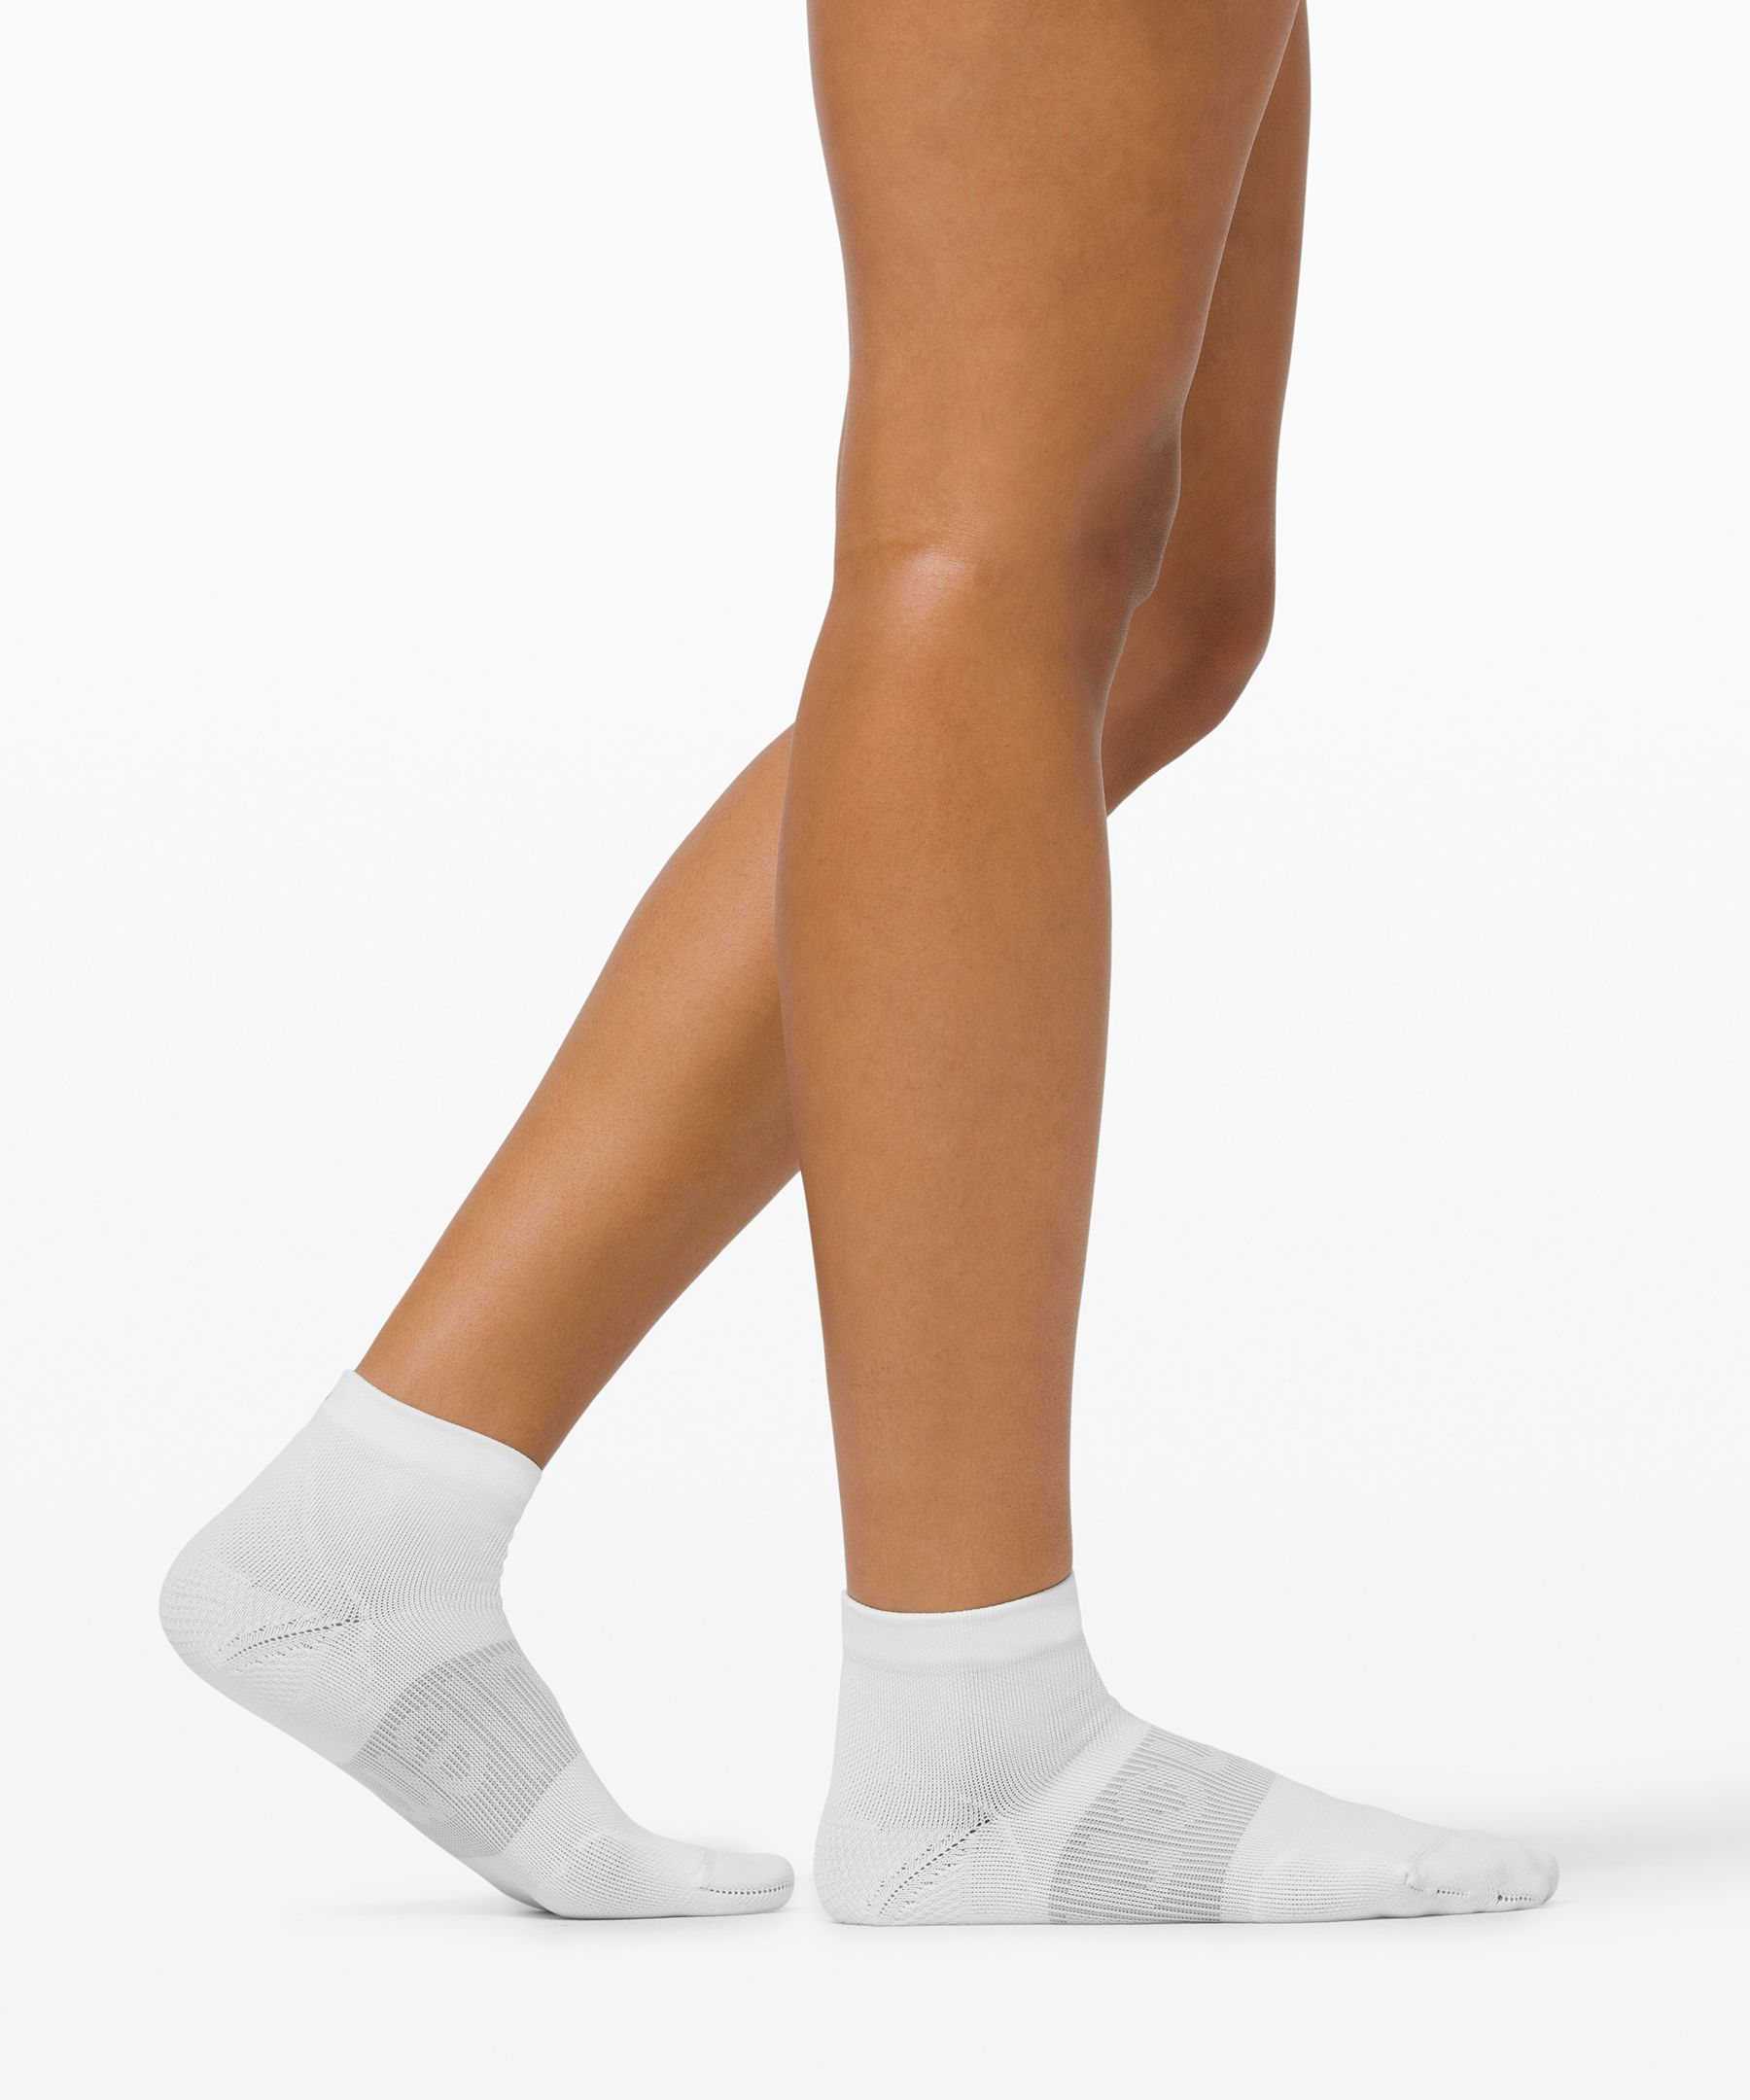 lululemon ankle socks